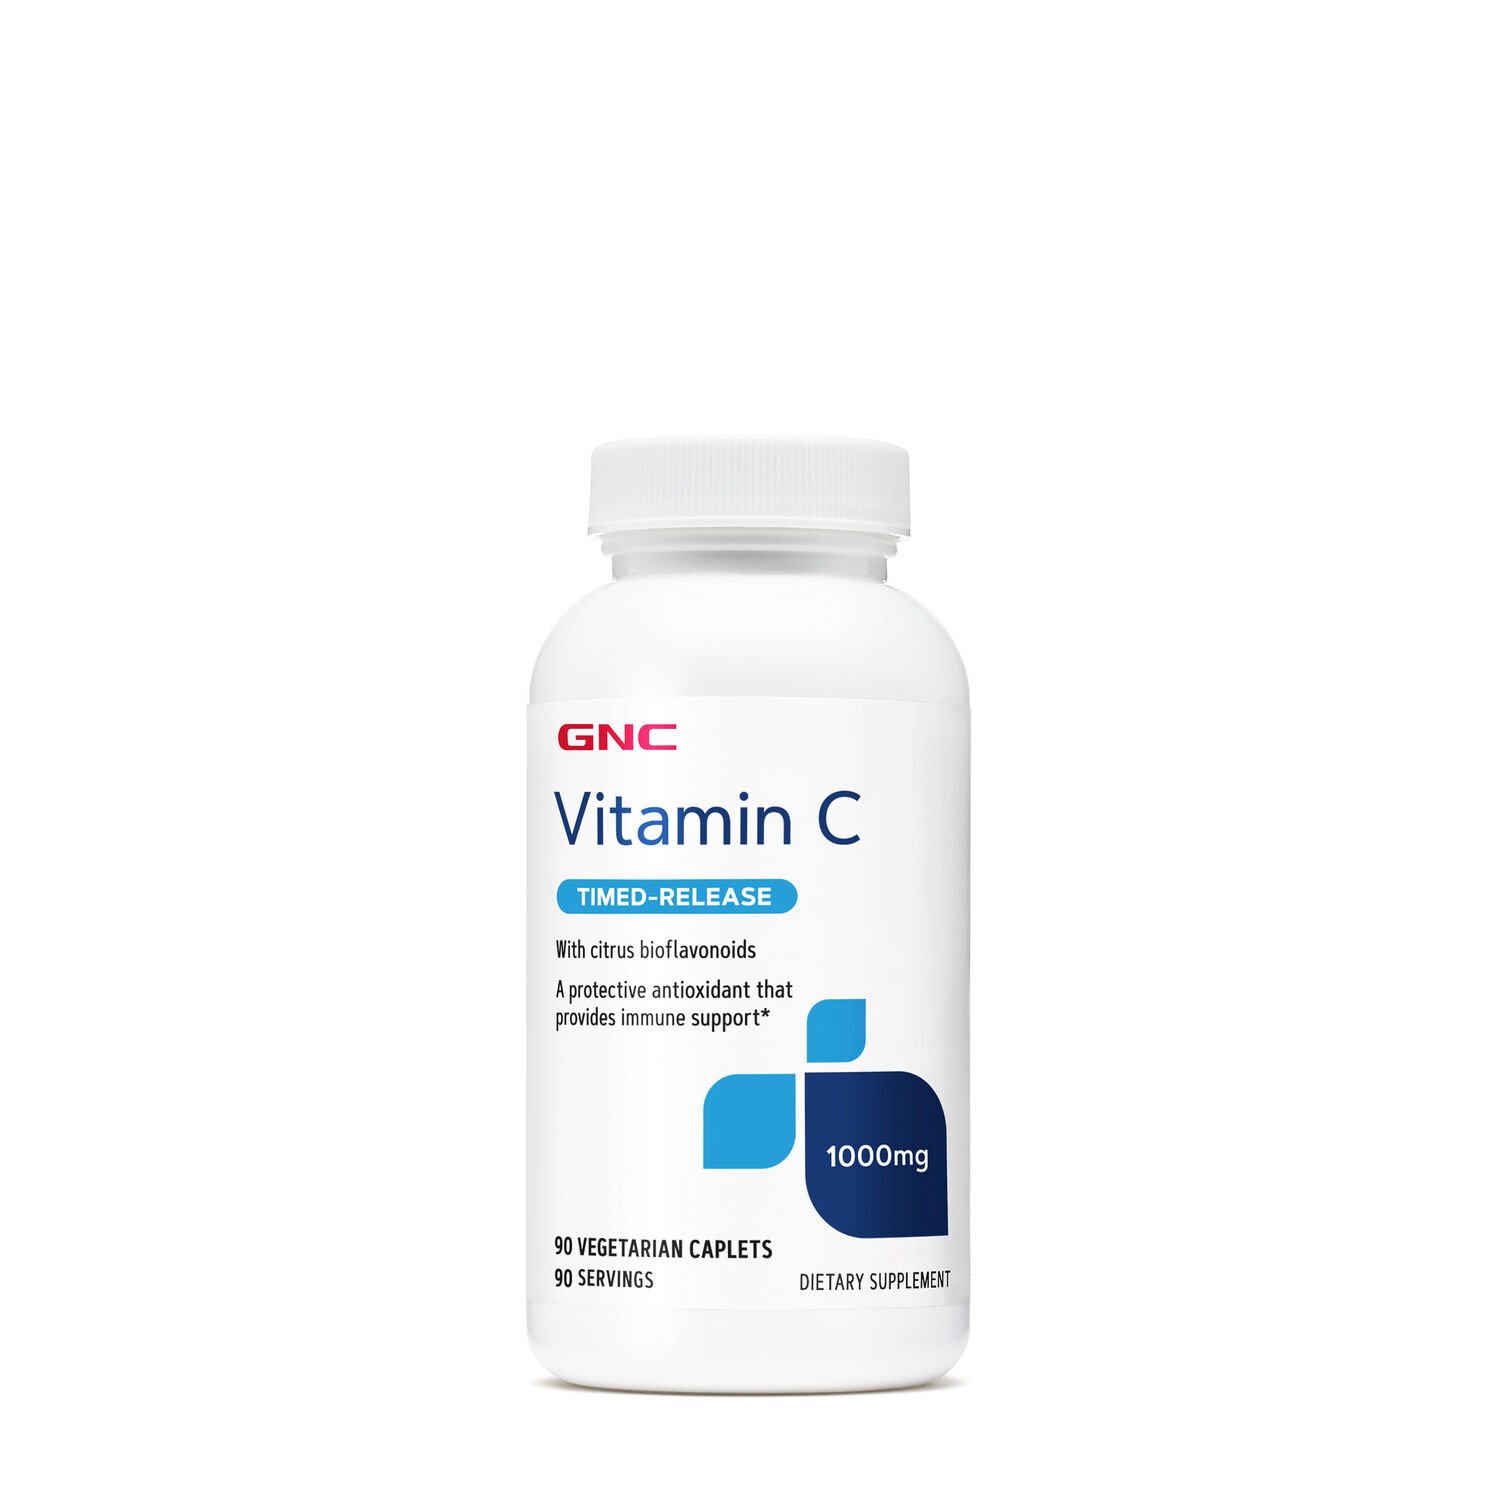 Витамины и минералы GNC Vitamin C 1000 mg Timed-Release, 90 вегакапсул,  мл, GNC. Витамины и минералы. Поддержание здоровья Укрепление иммунитета 